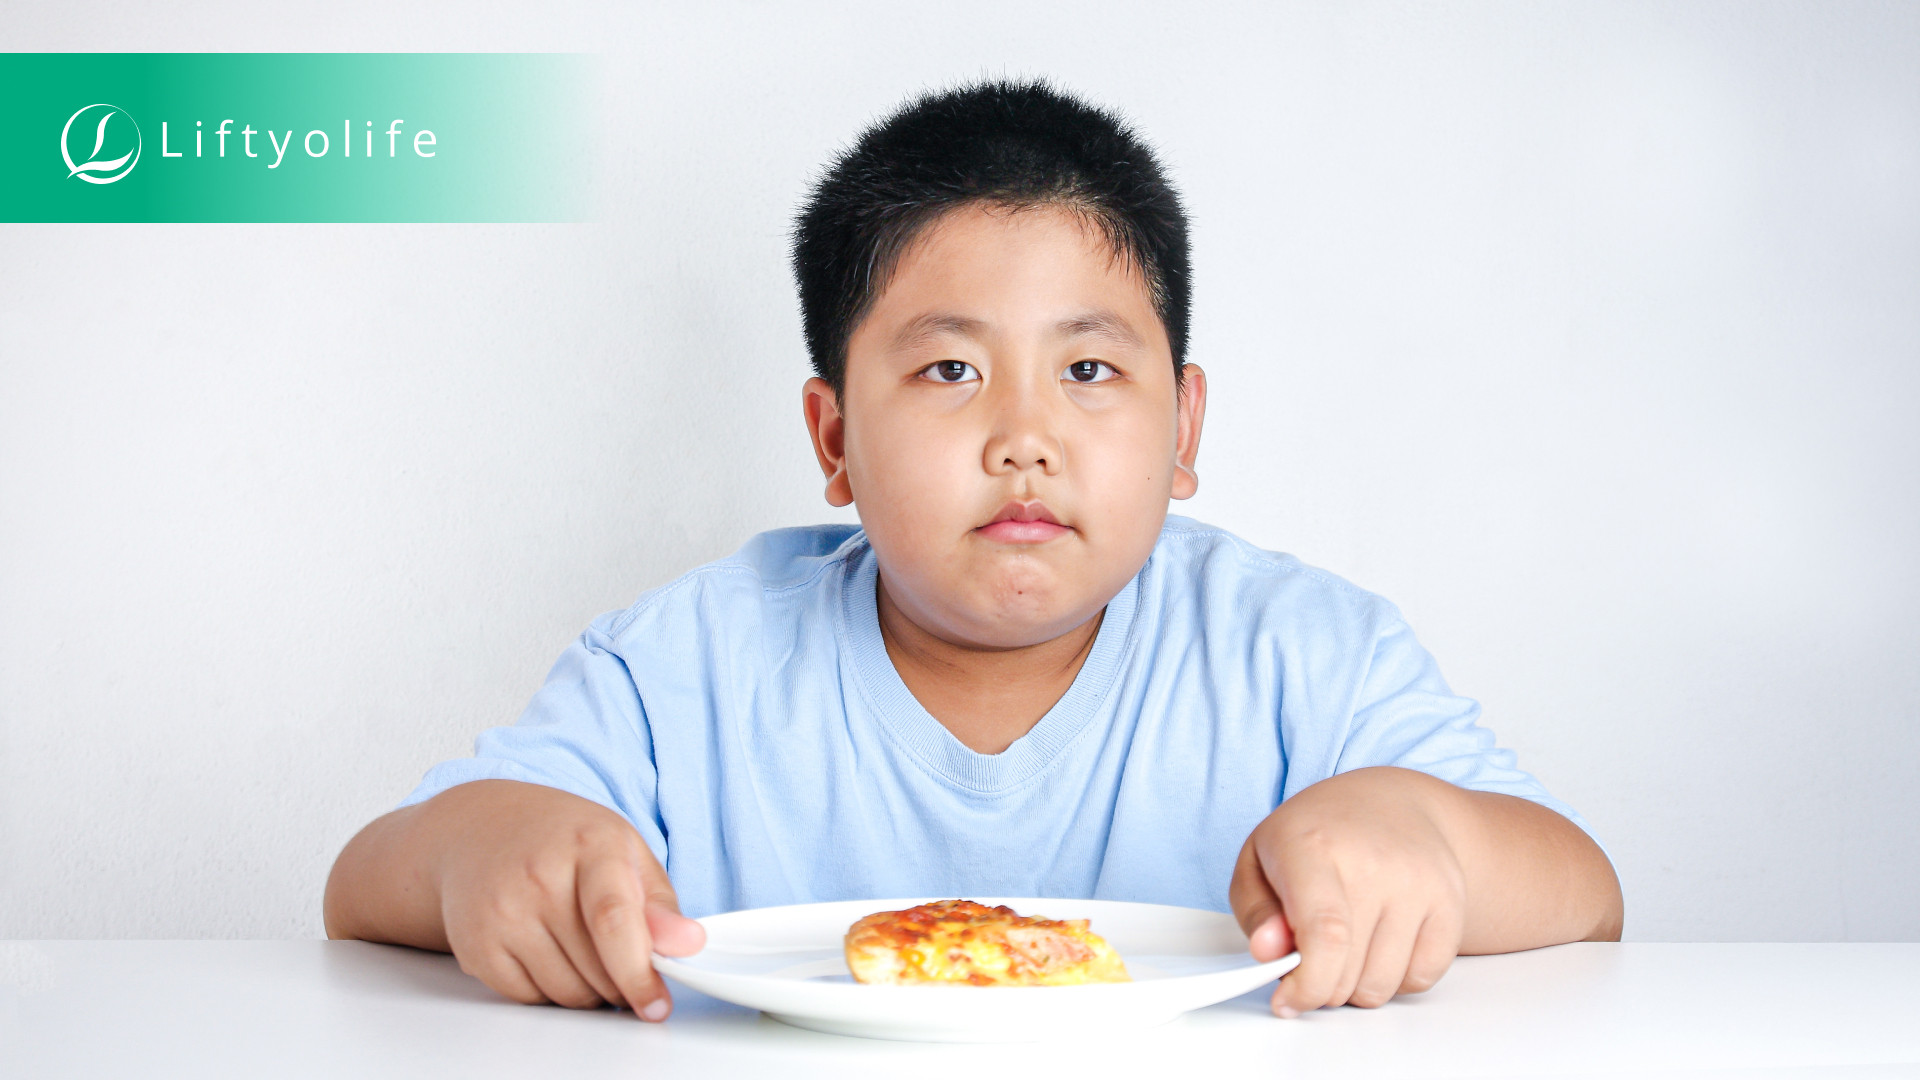 Obesity prevention for kids